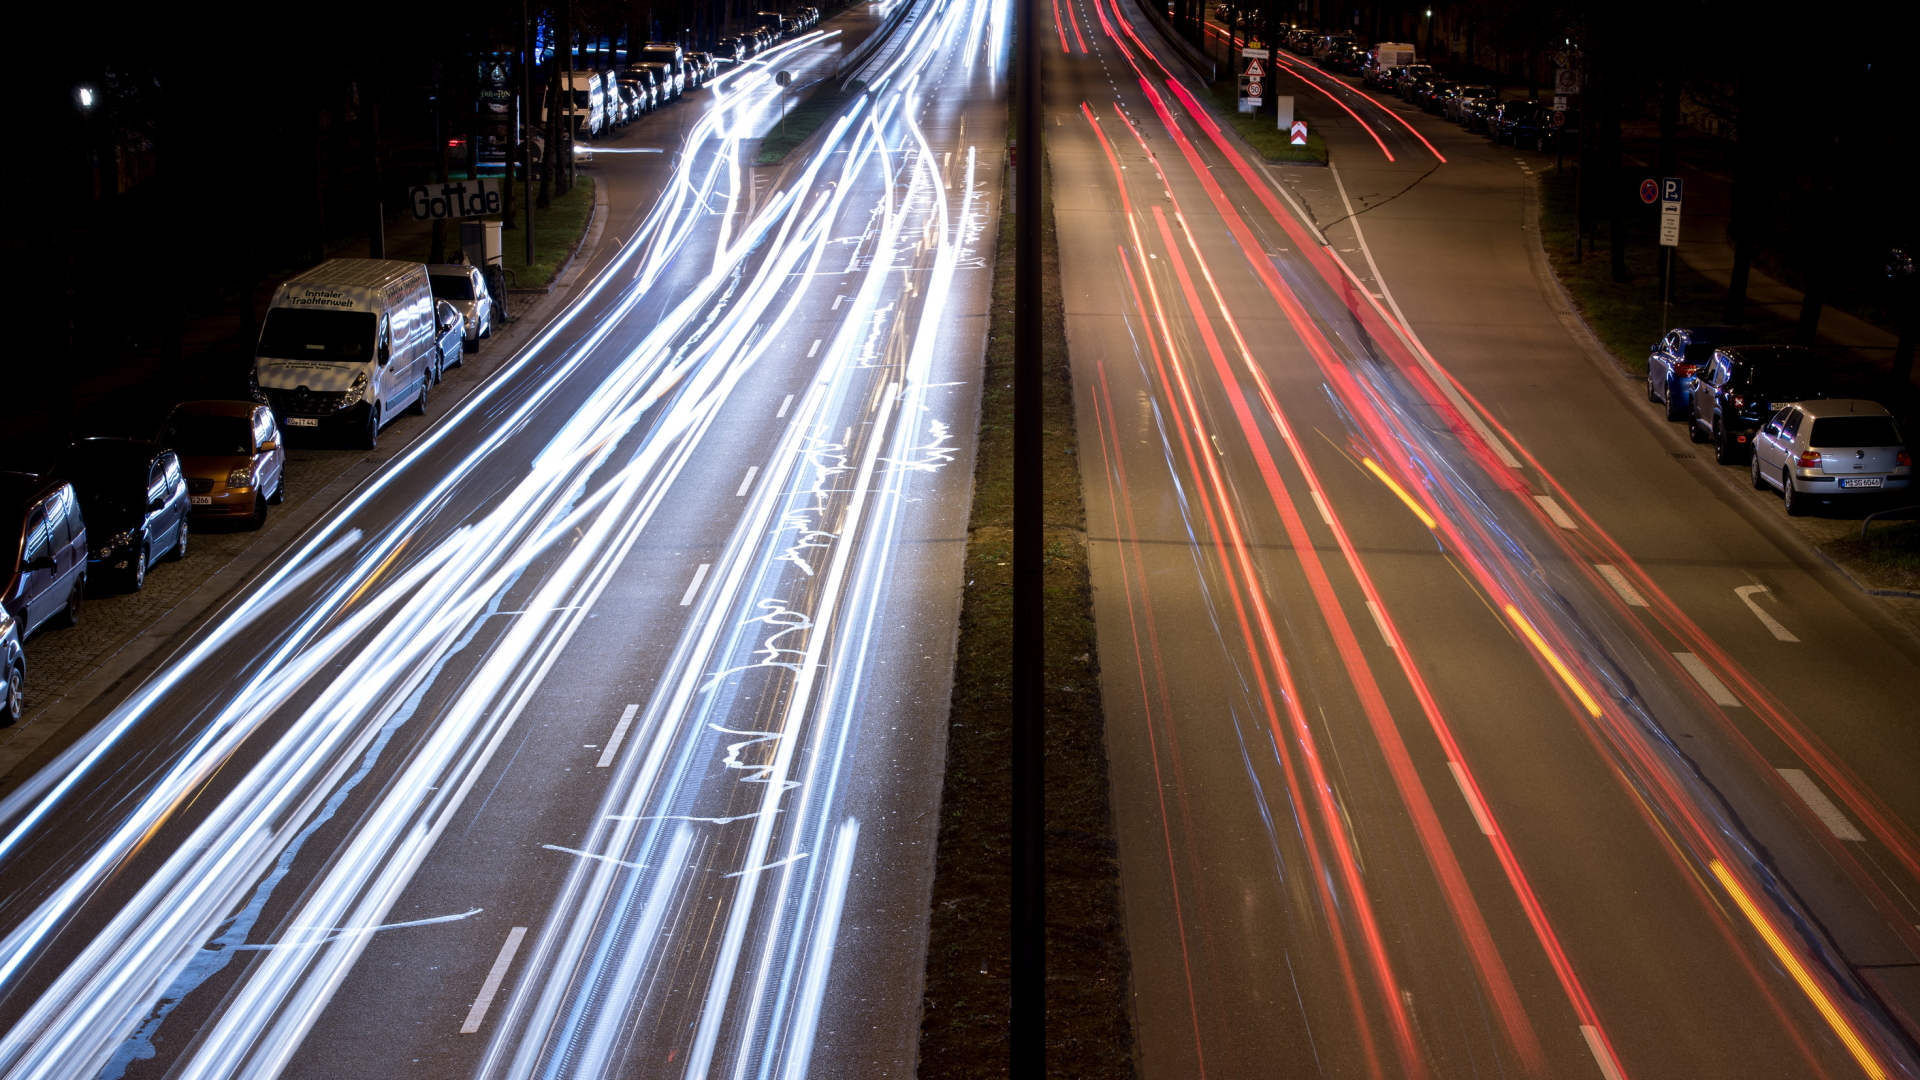 Fahrzeuge auf einer Münchener Straße hinterlassen bunte Lichtspuren.